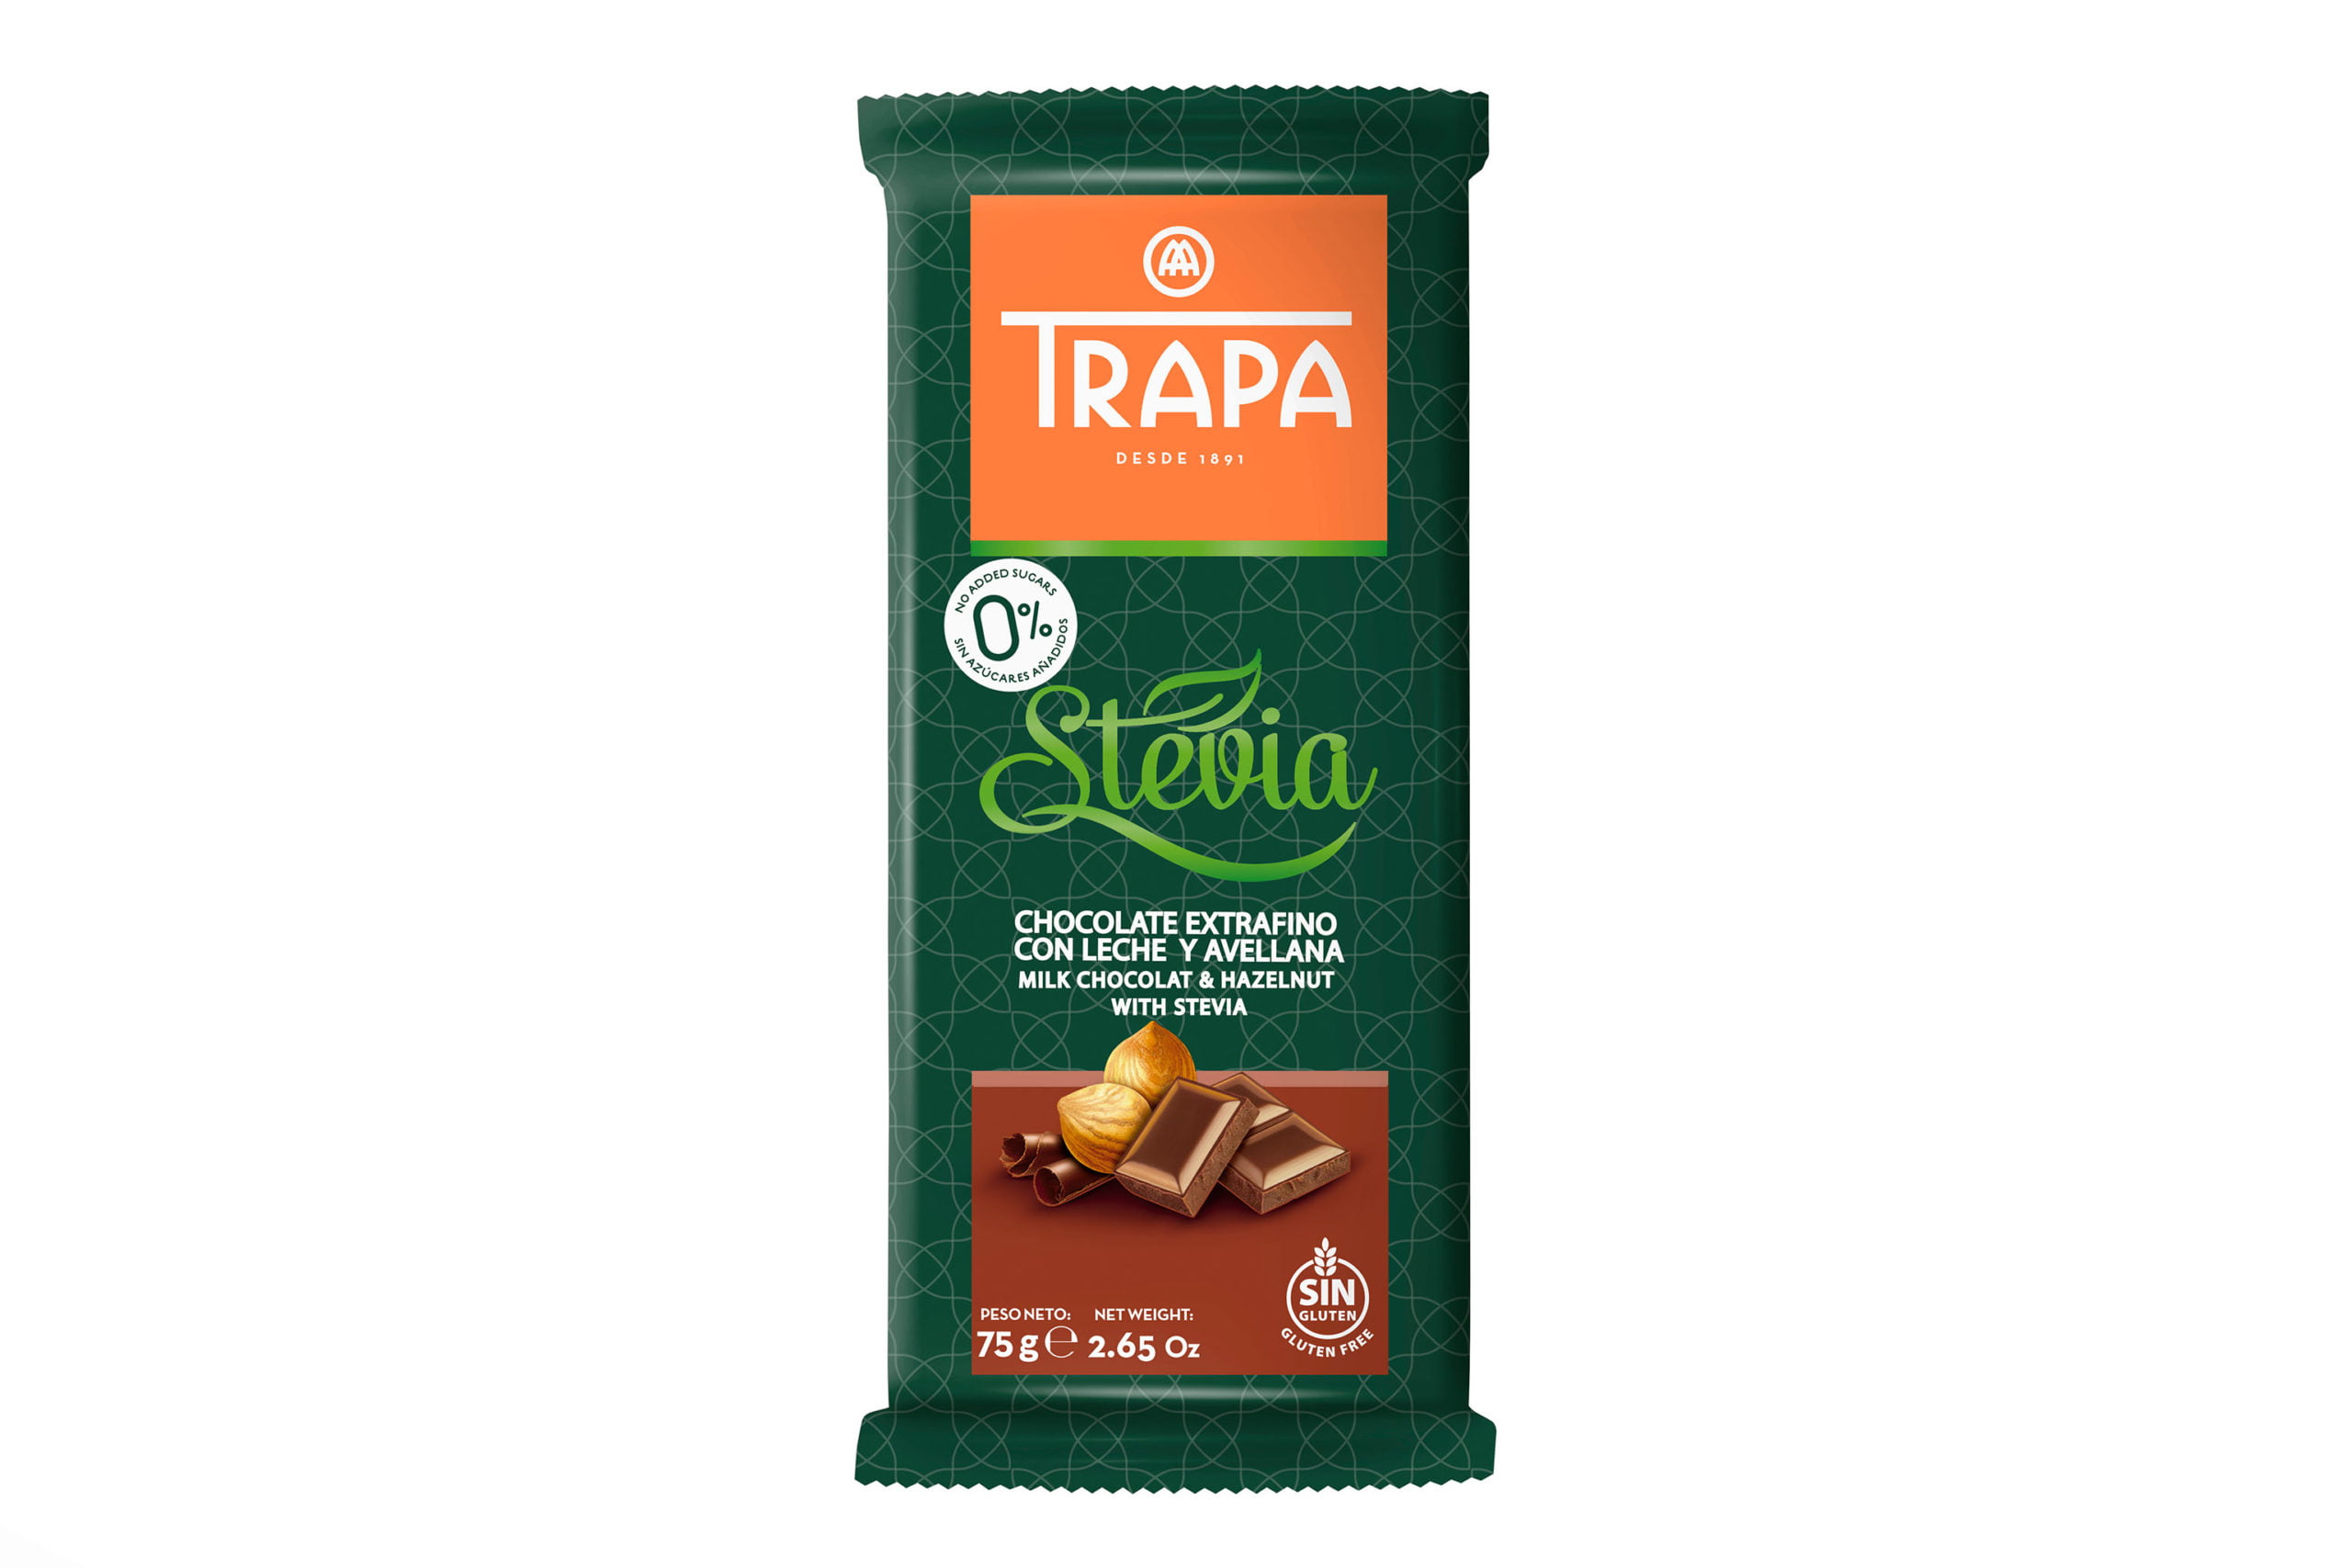 trapa chocolate dubai uae whole sale